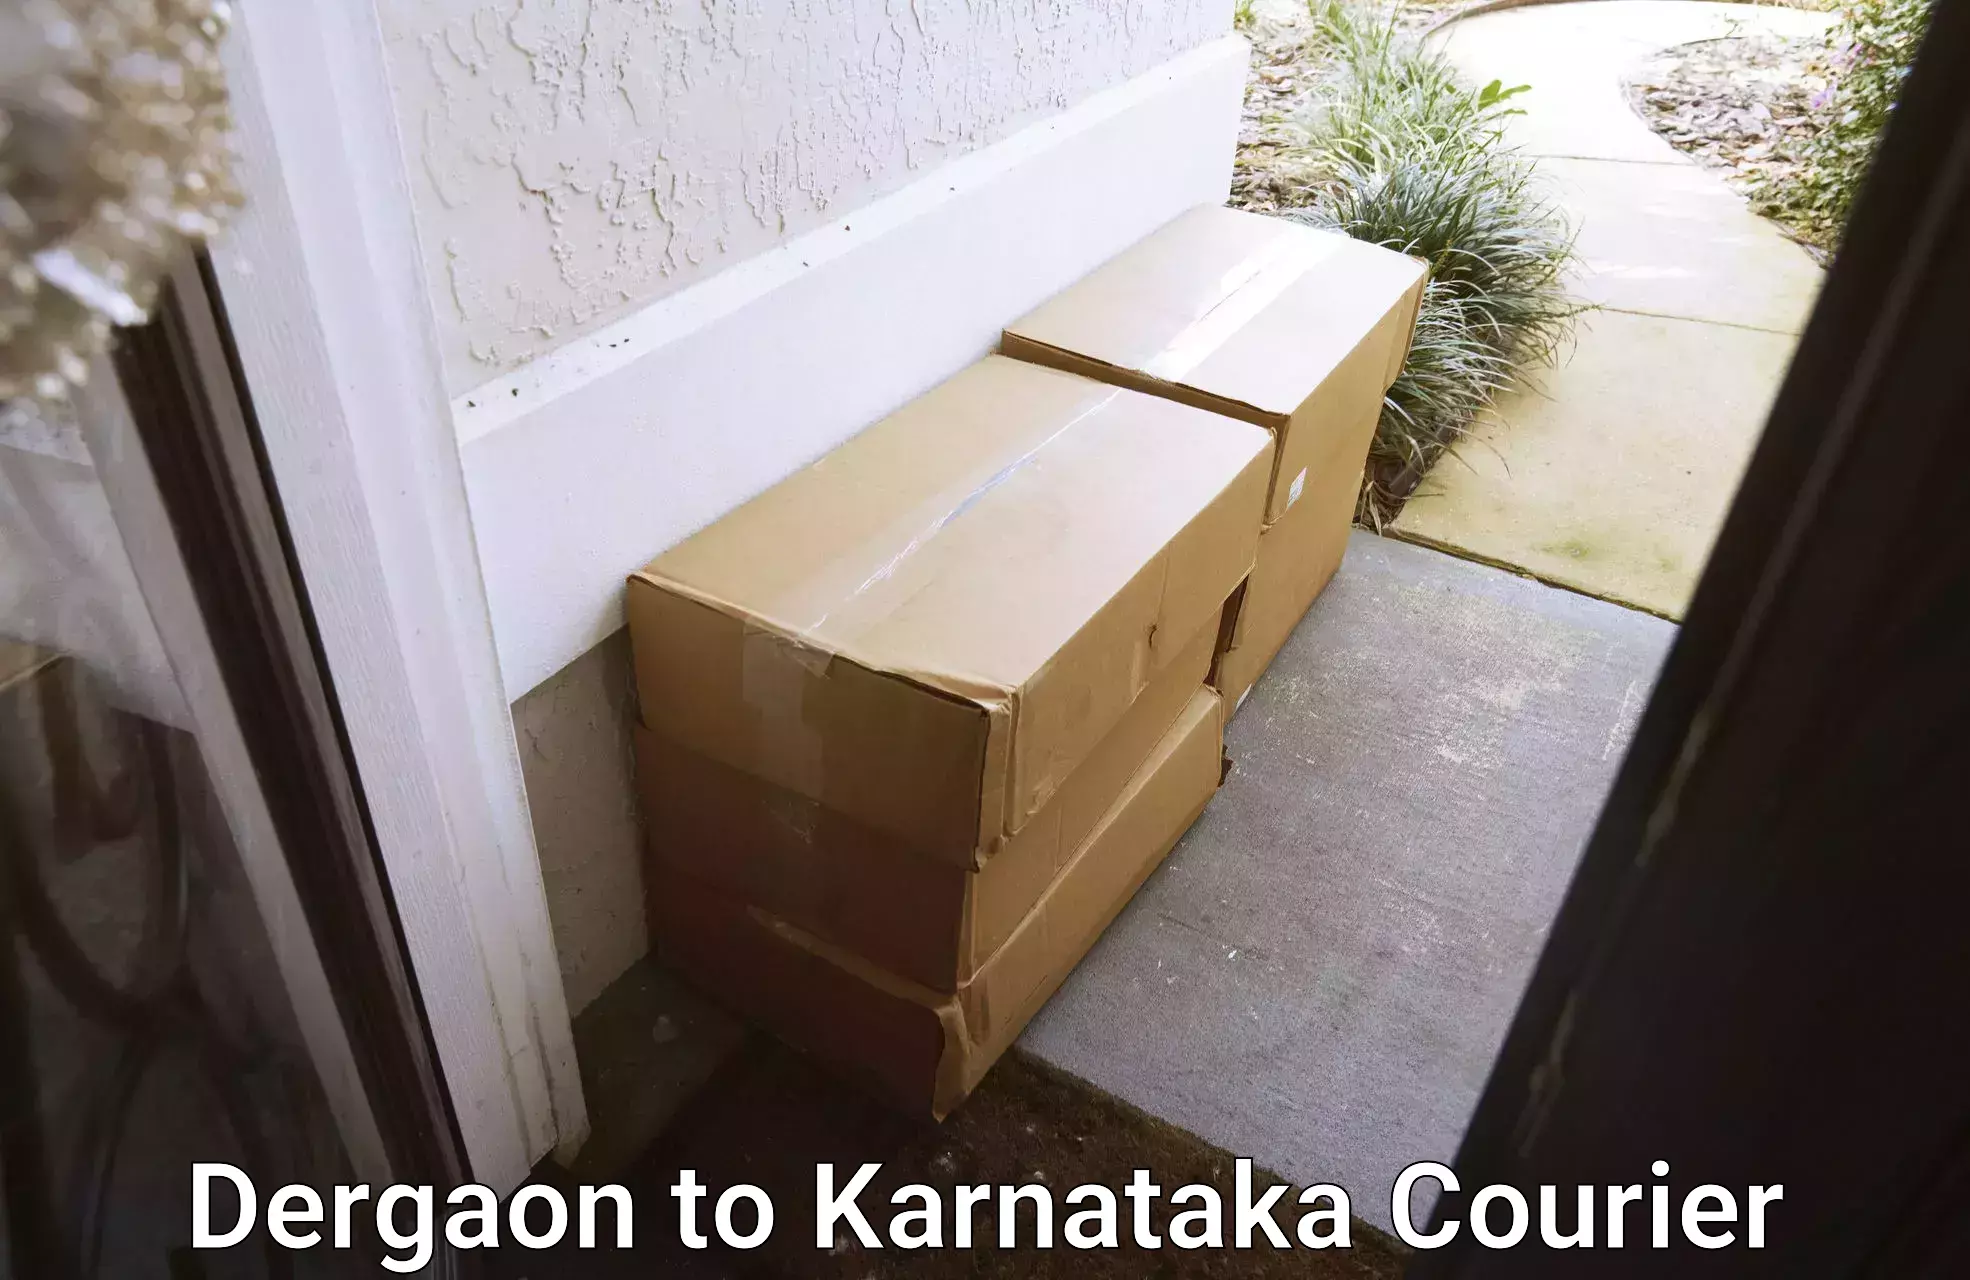 Efficient parcel service Dergaon to Karnataka